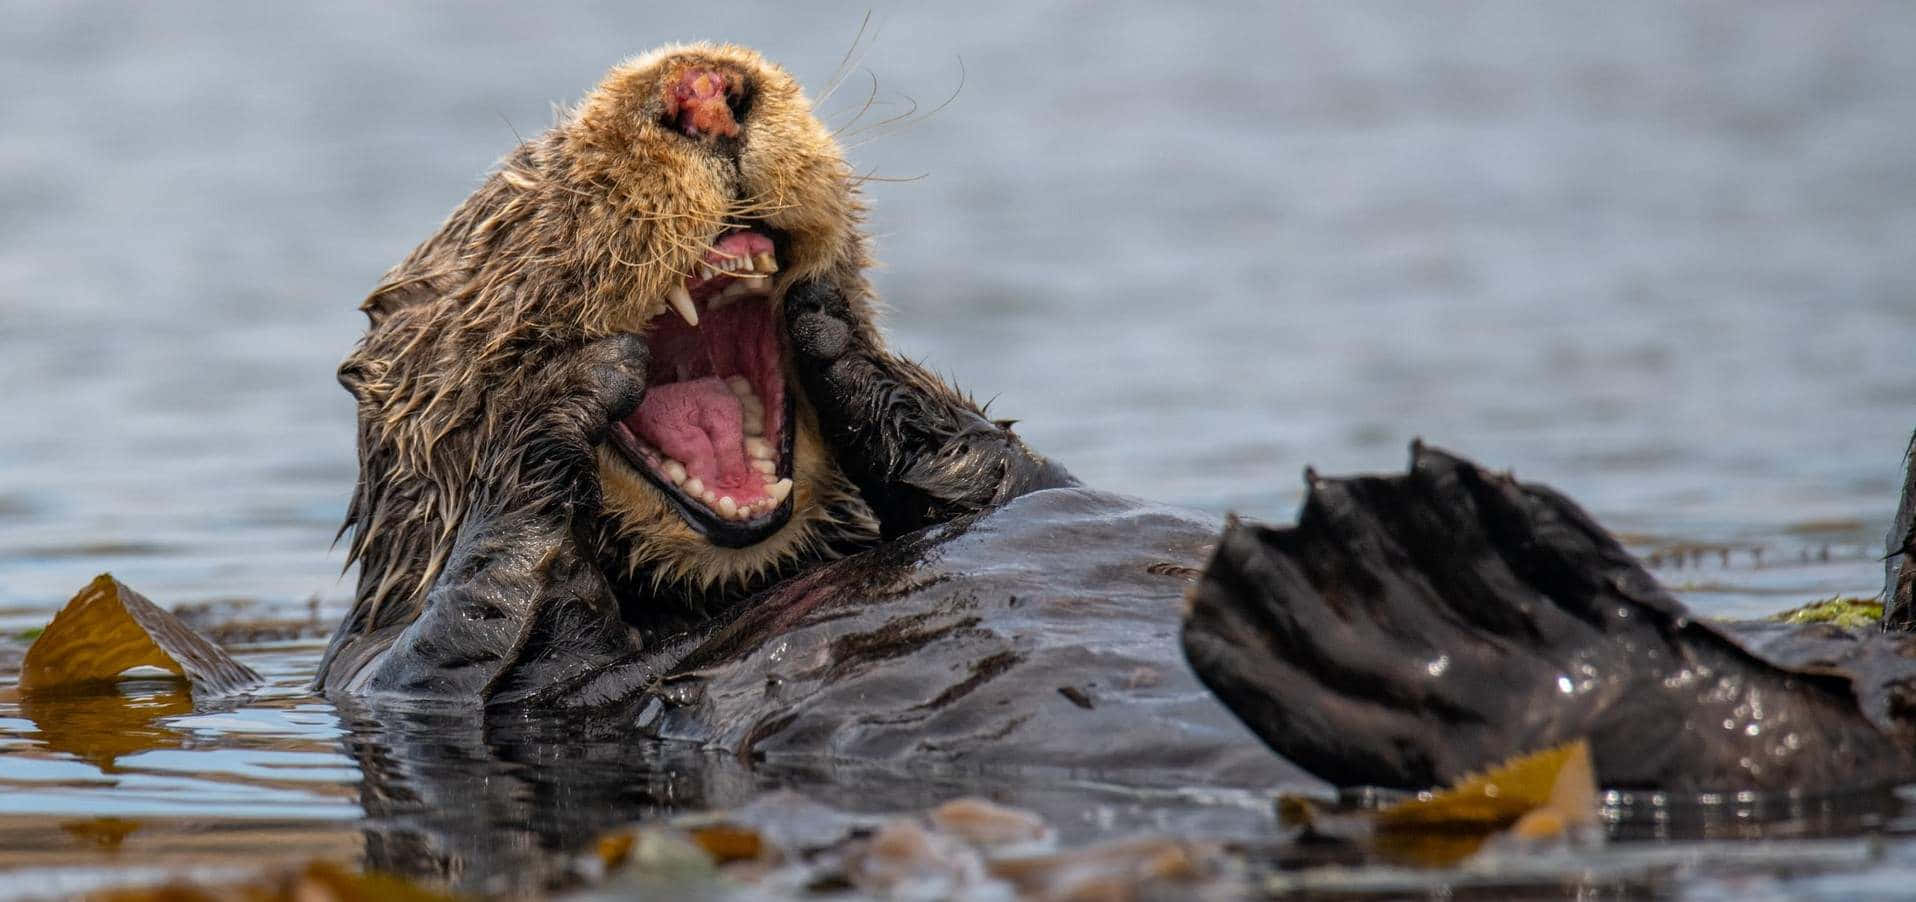 Random Funny Sea Otter Picture